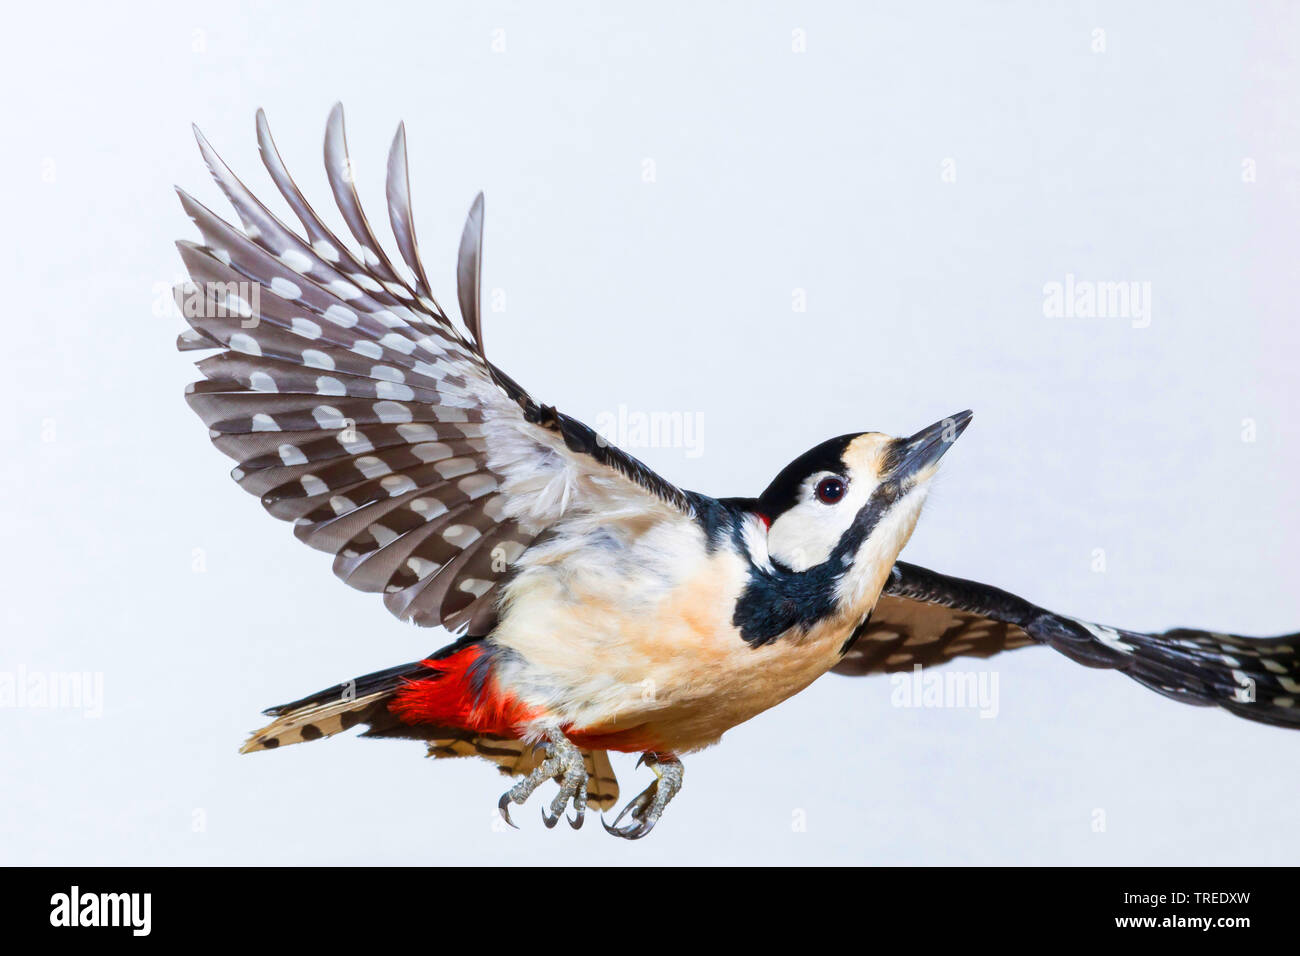 Great spotted woodpecker (Picoides major, Dendrocopos major), femme en vol, peu de temps d'exposition, Allemagne Banque D'Images